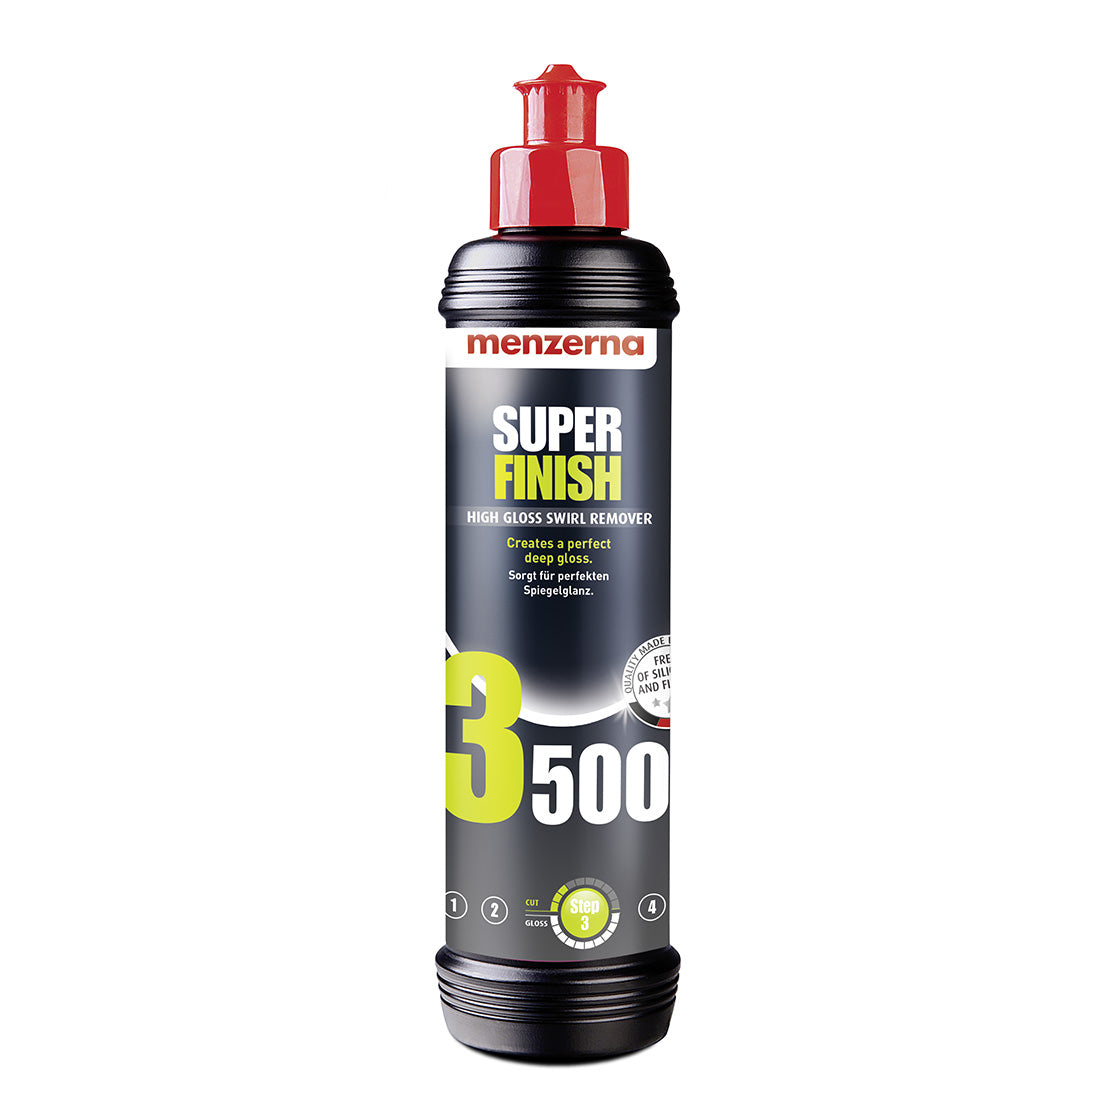 Menzerna Super Finish 3500 (PO106FA)